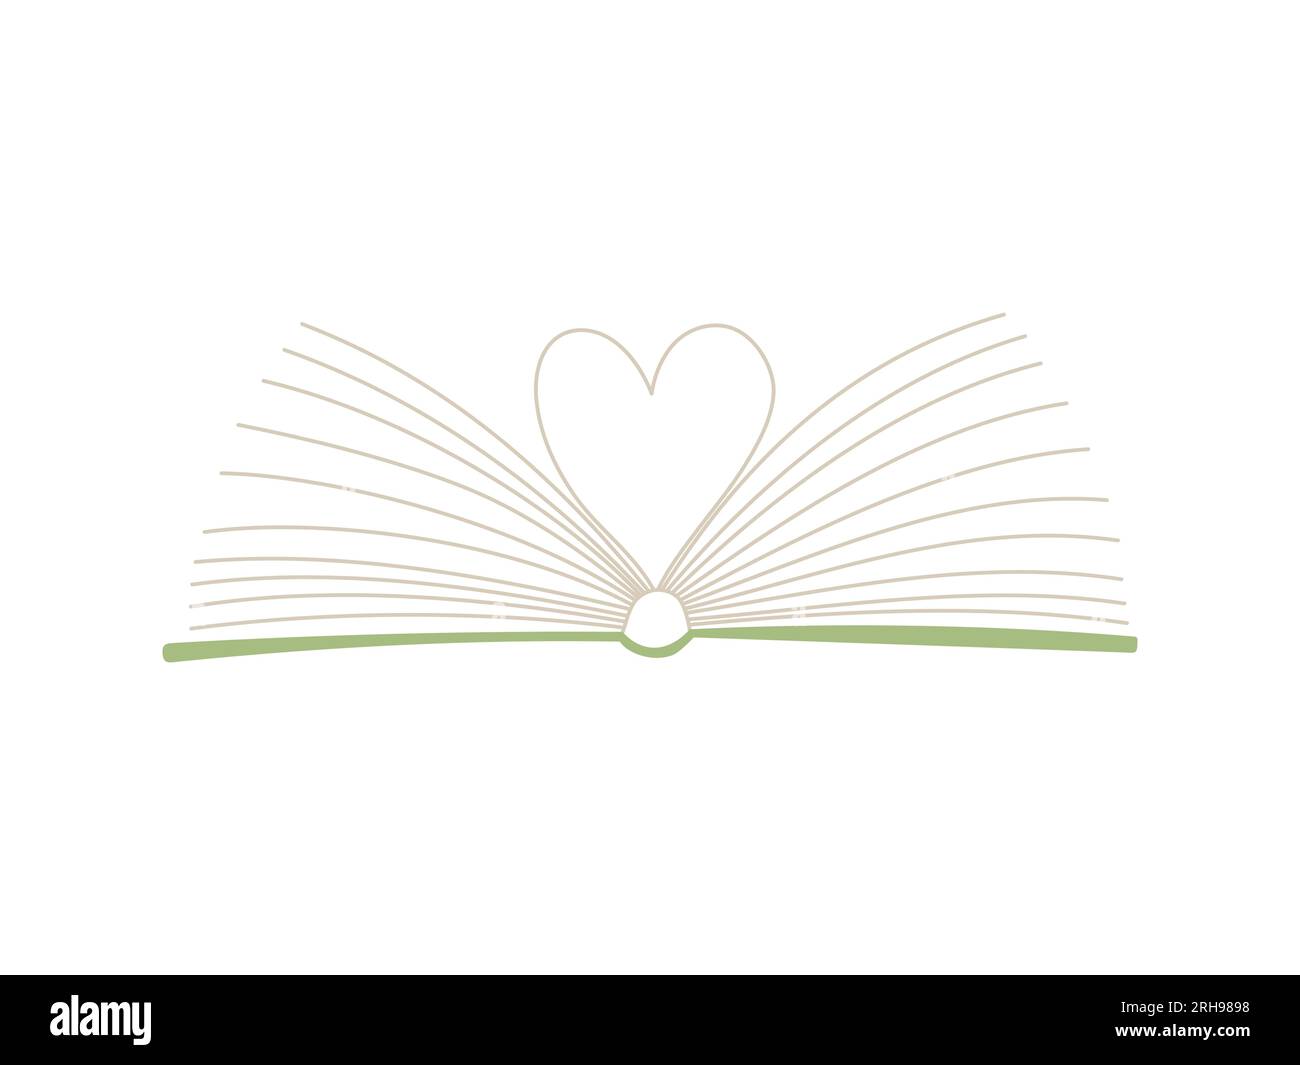 Livre ouvert avec des pages pliées en forme de coeur. Le livre est un symbole de connaissance, d'apprentissage. Un concept pour les amateurs de lecture, de littérature et d'apprentissage. Illustration de Vecteur